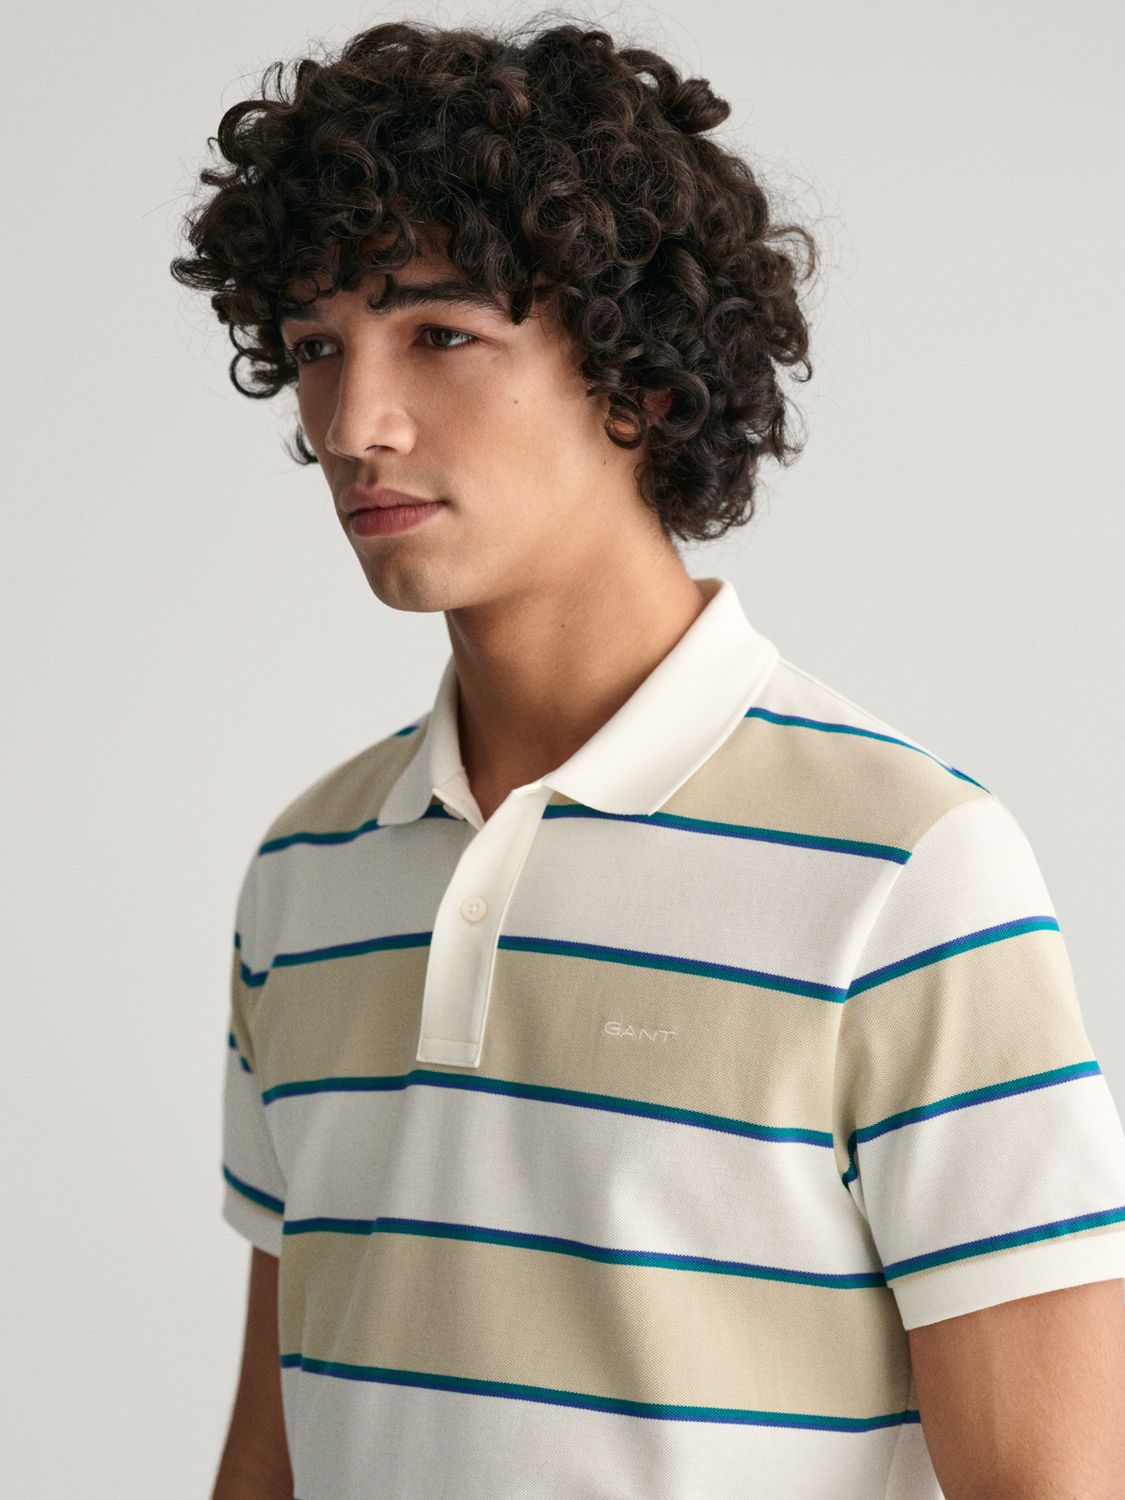 GANT Striped Pique Polo Shirt, Silky Beige, M